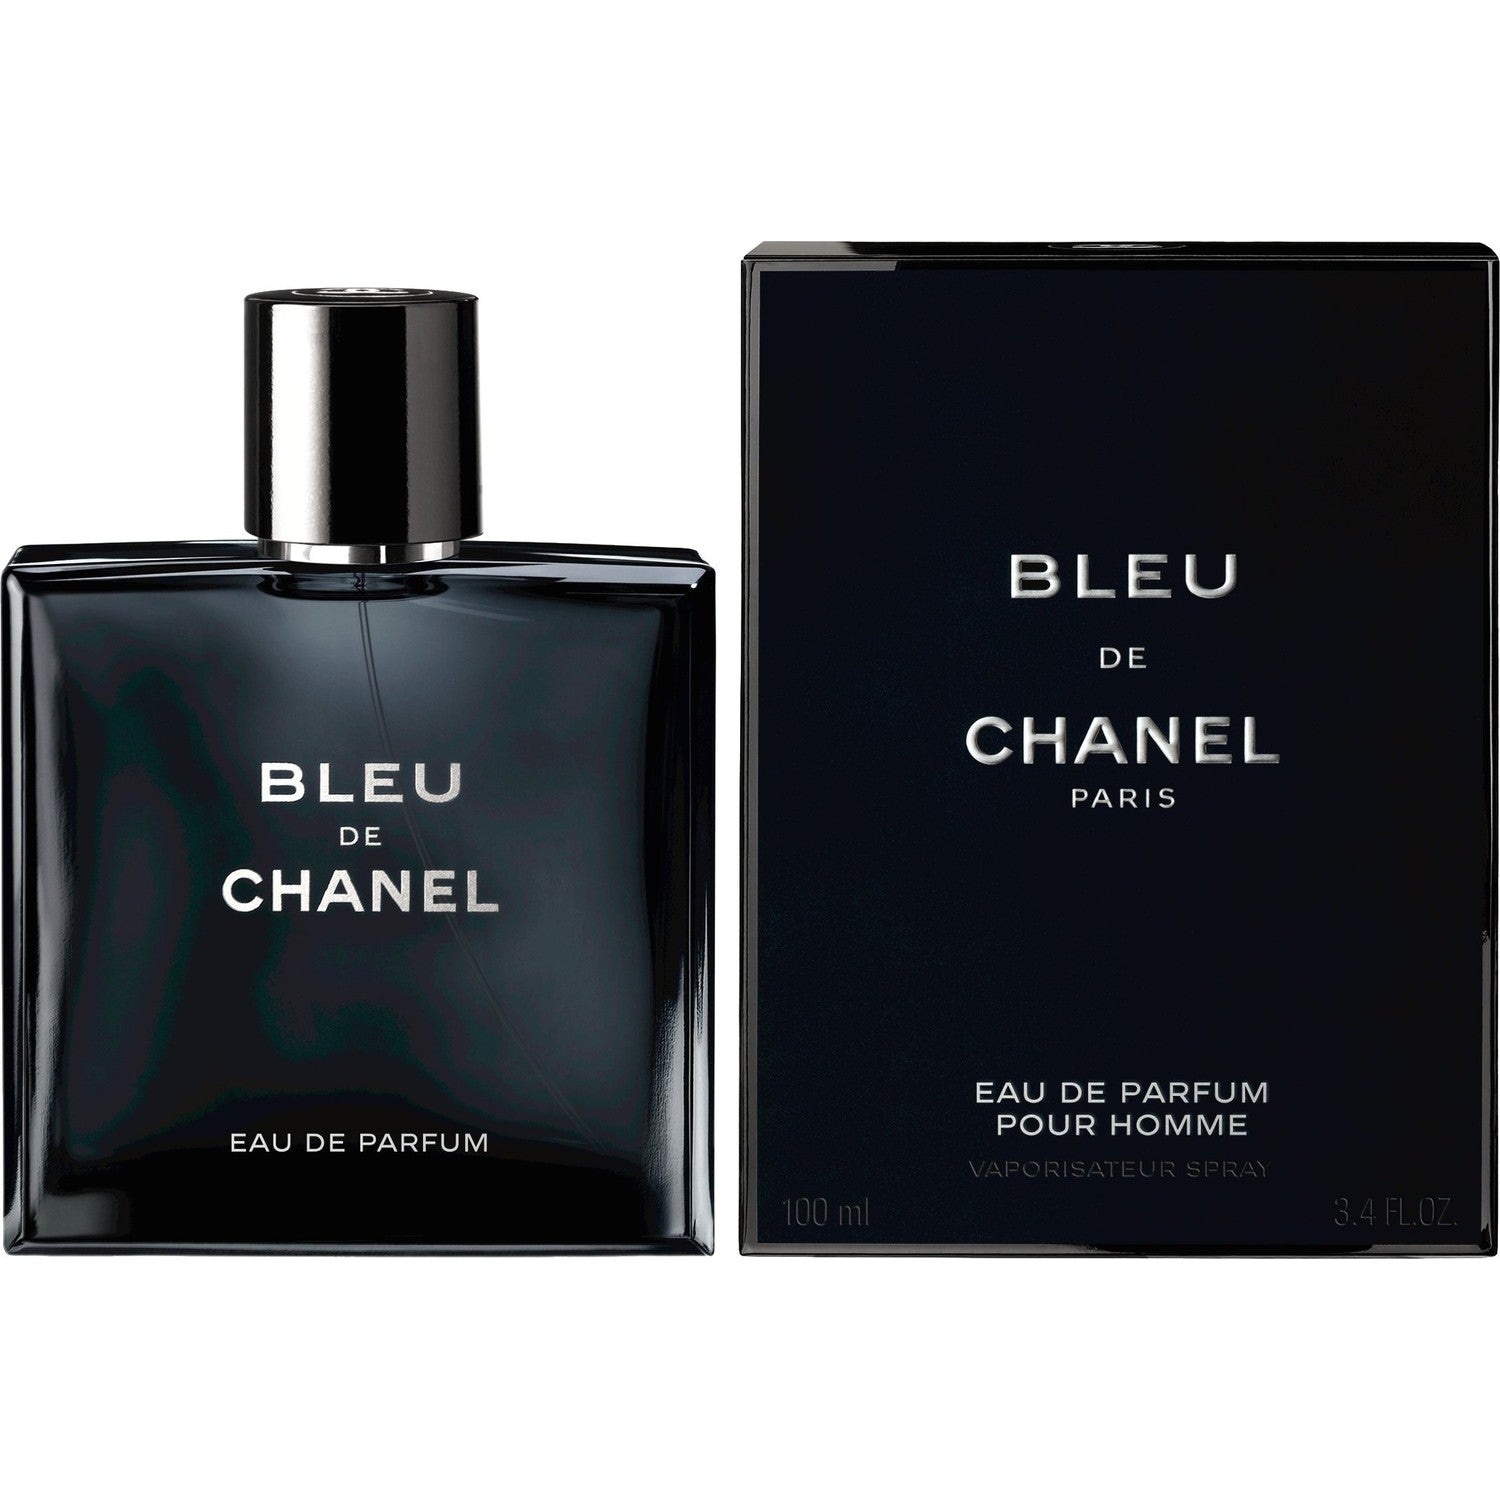 Amazoncom  Chanel Bleu De Chanel Eau De Toilette Spray For Men 100Ml34Oz   Beauty  Personal Care